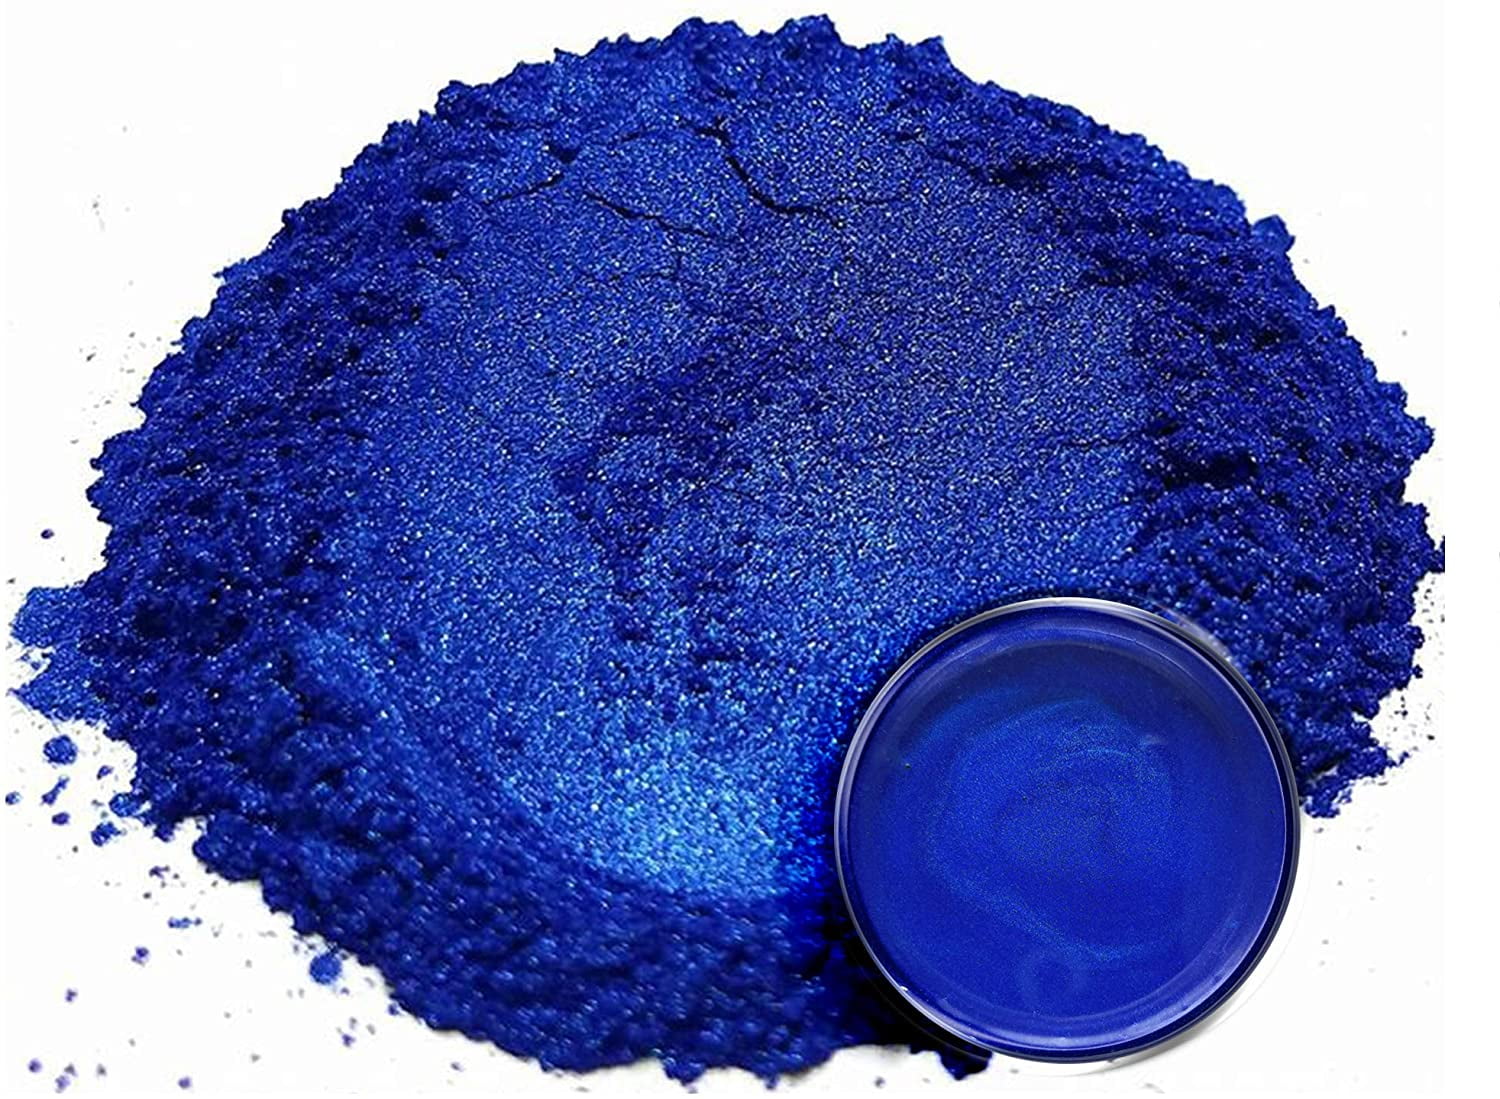 Mica Powder Pigment “Ocean Blue” (25g) Multipurpose DIY Arts and